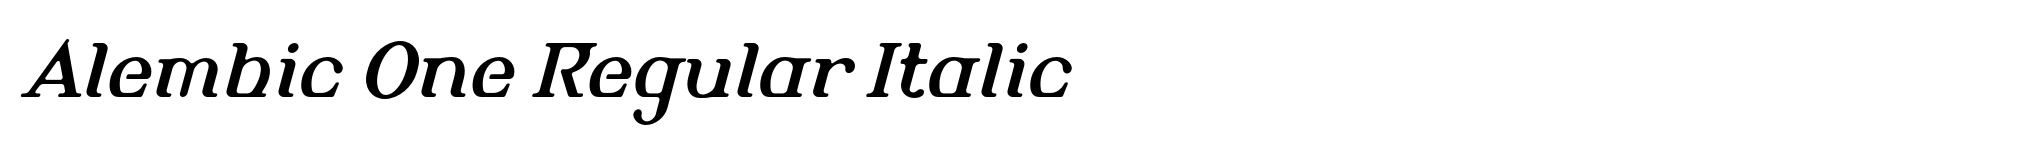 Alembic One Regular Italic image